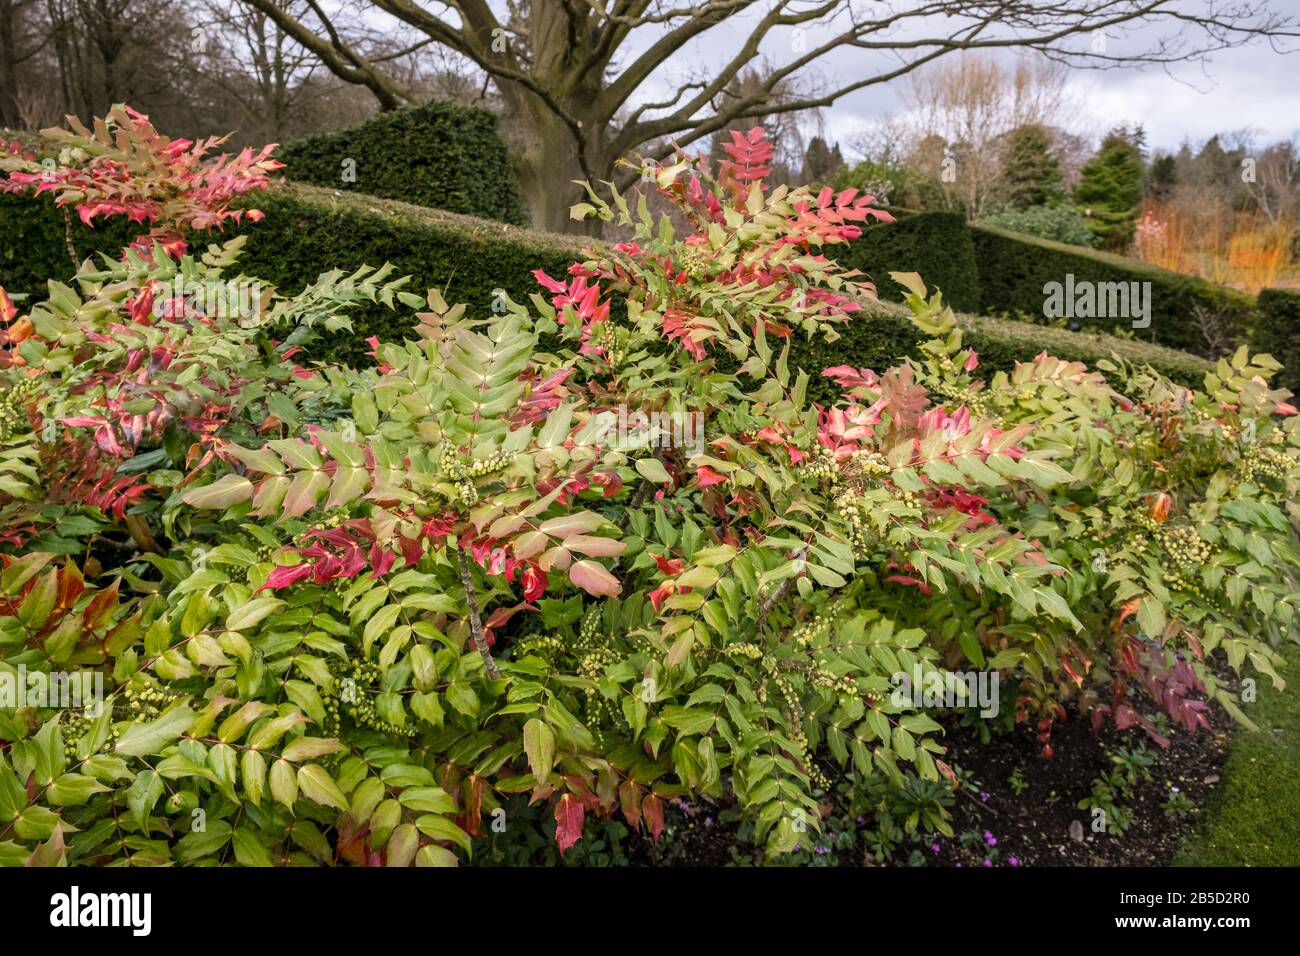 L'arbuste verni Mahonia Bealei aux feuilles rouges à ailes donne de la couleur et de la texture dans un jardin de fin d'hiver / début de printemps, mars, Angleterre, Royaume-Uni Banque D'Images